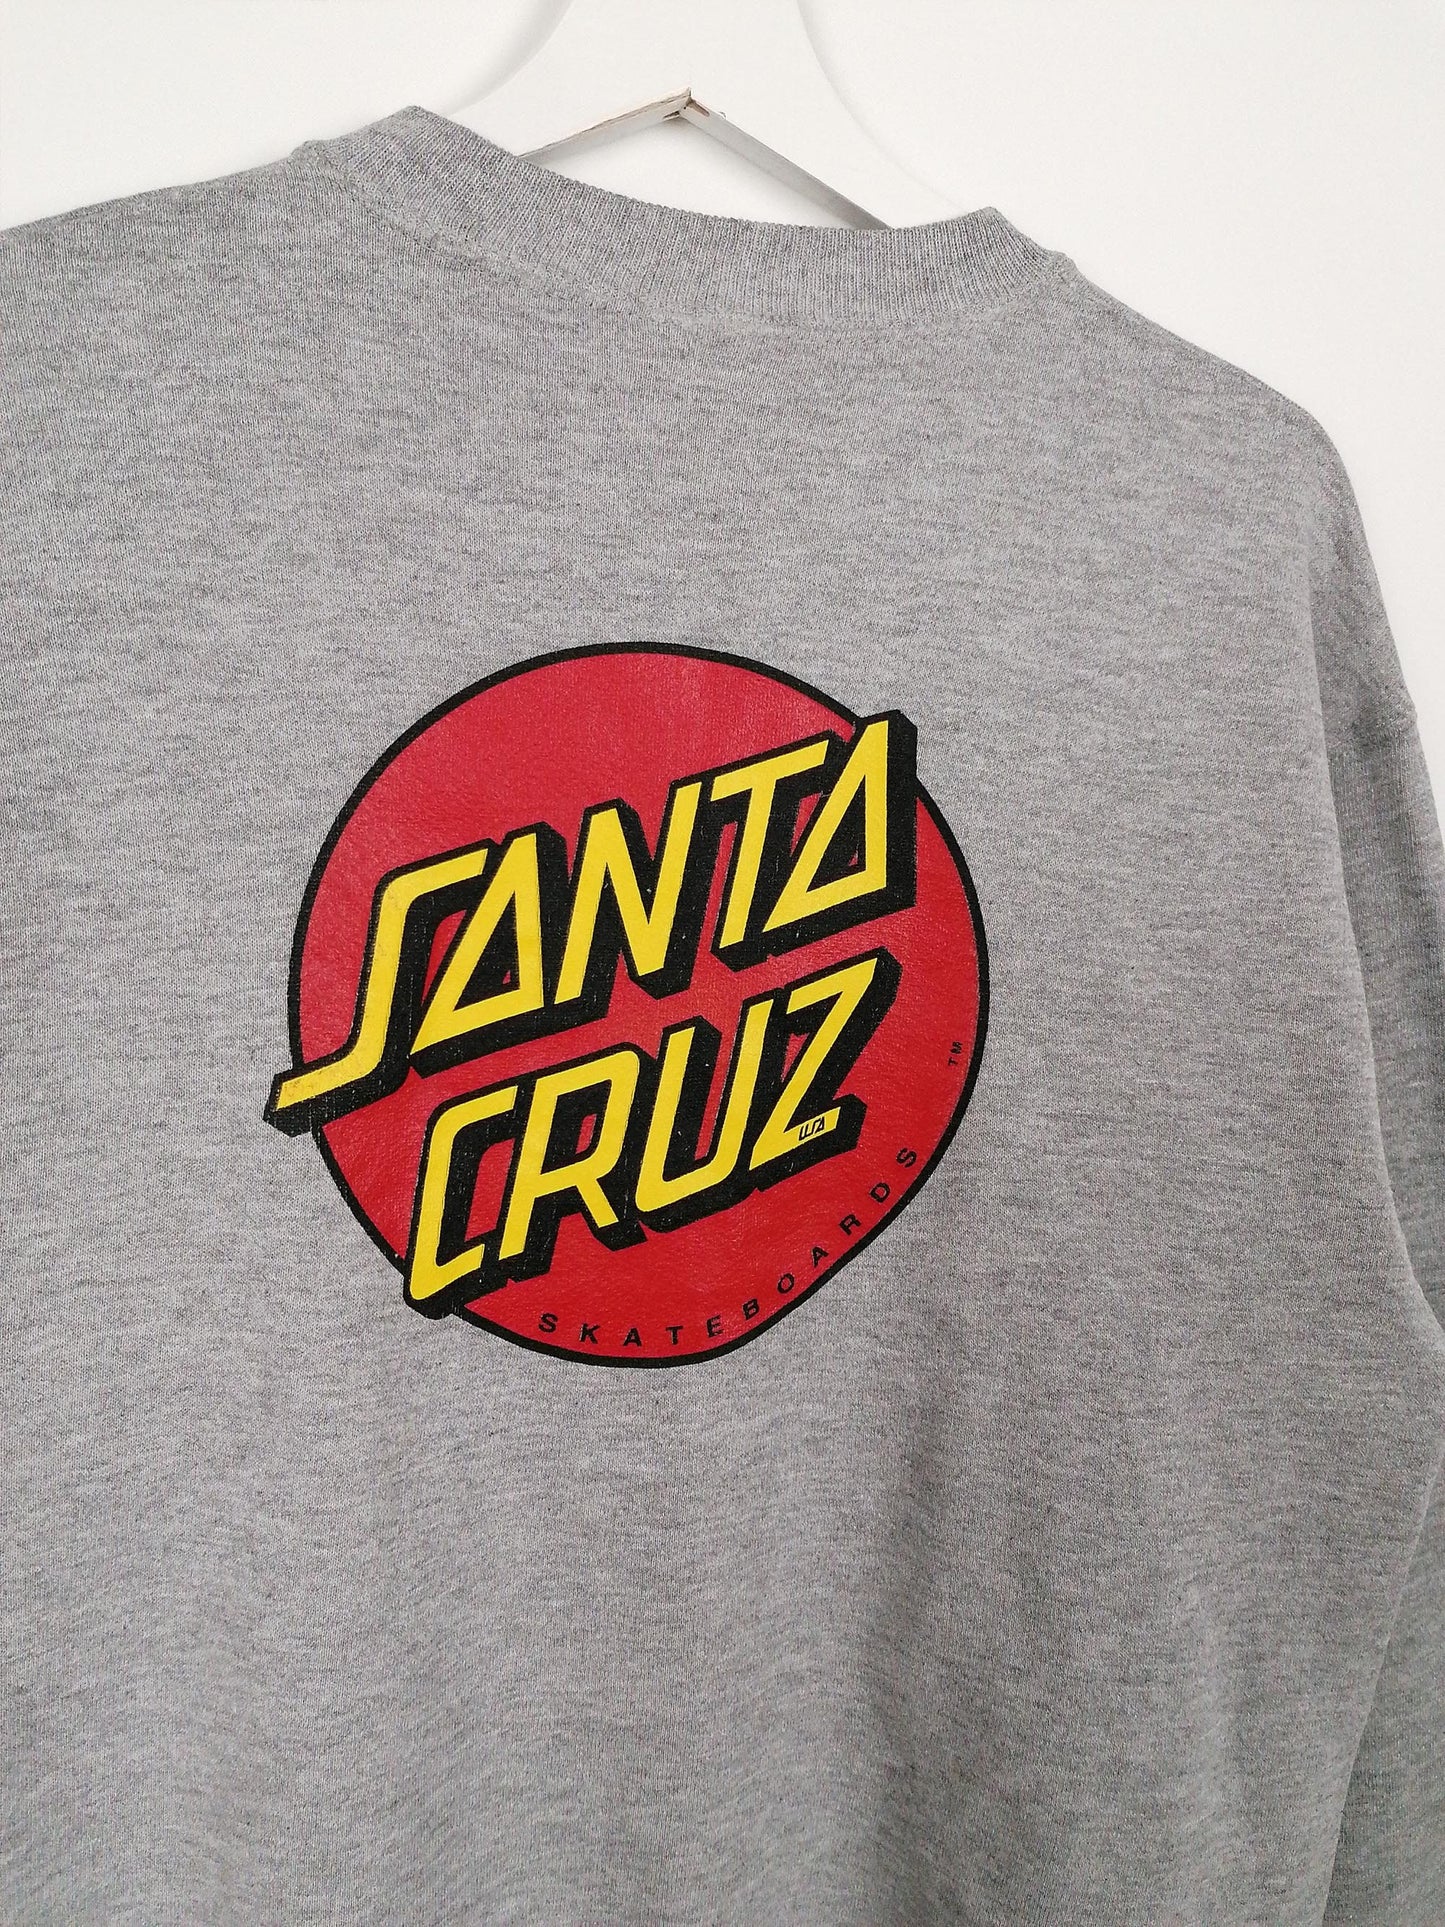 Vintage 90's SANTA CRUZ Skateboards *Rare* NHS Sweatshirt - size M